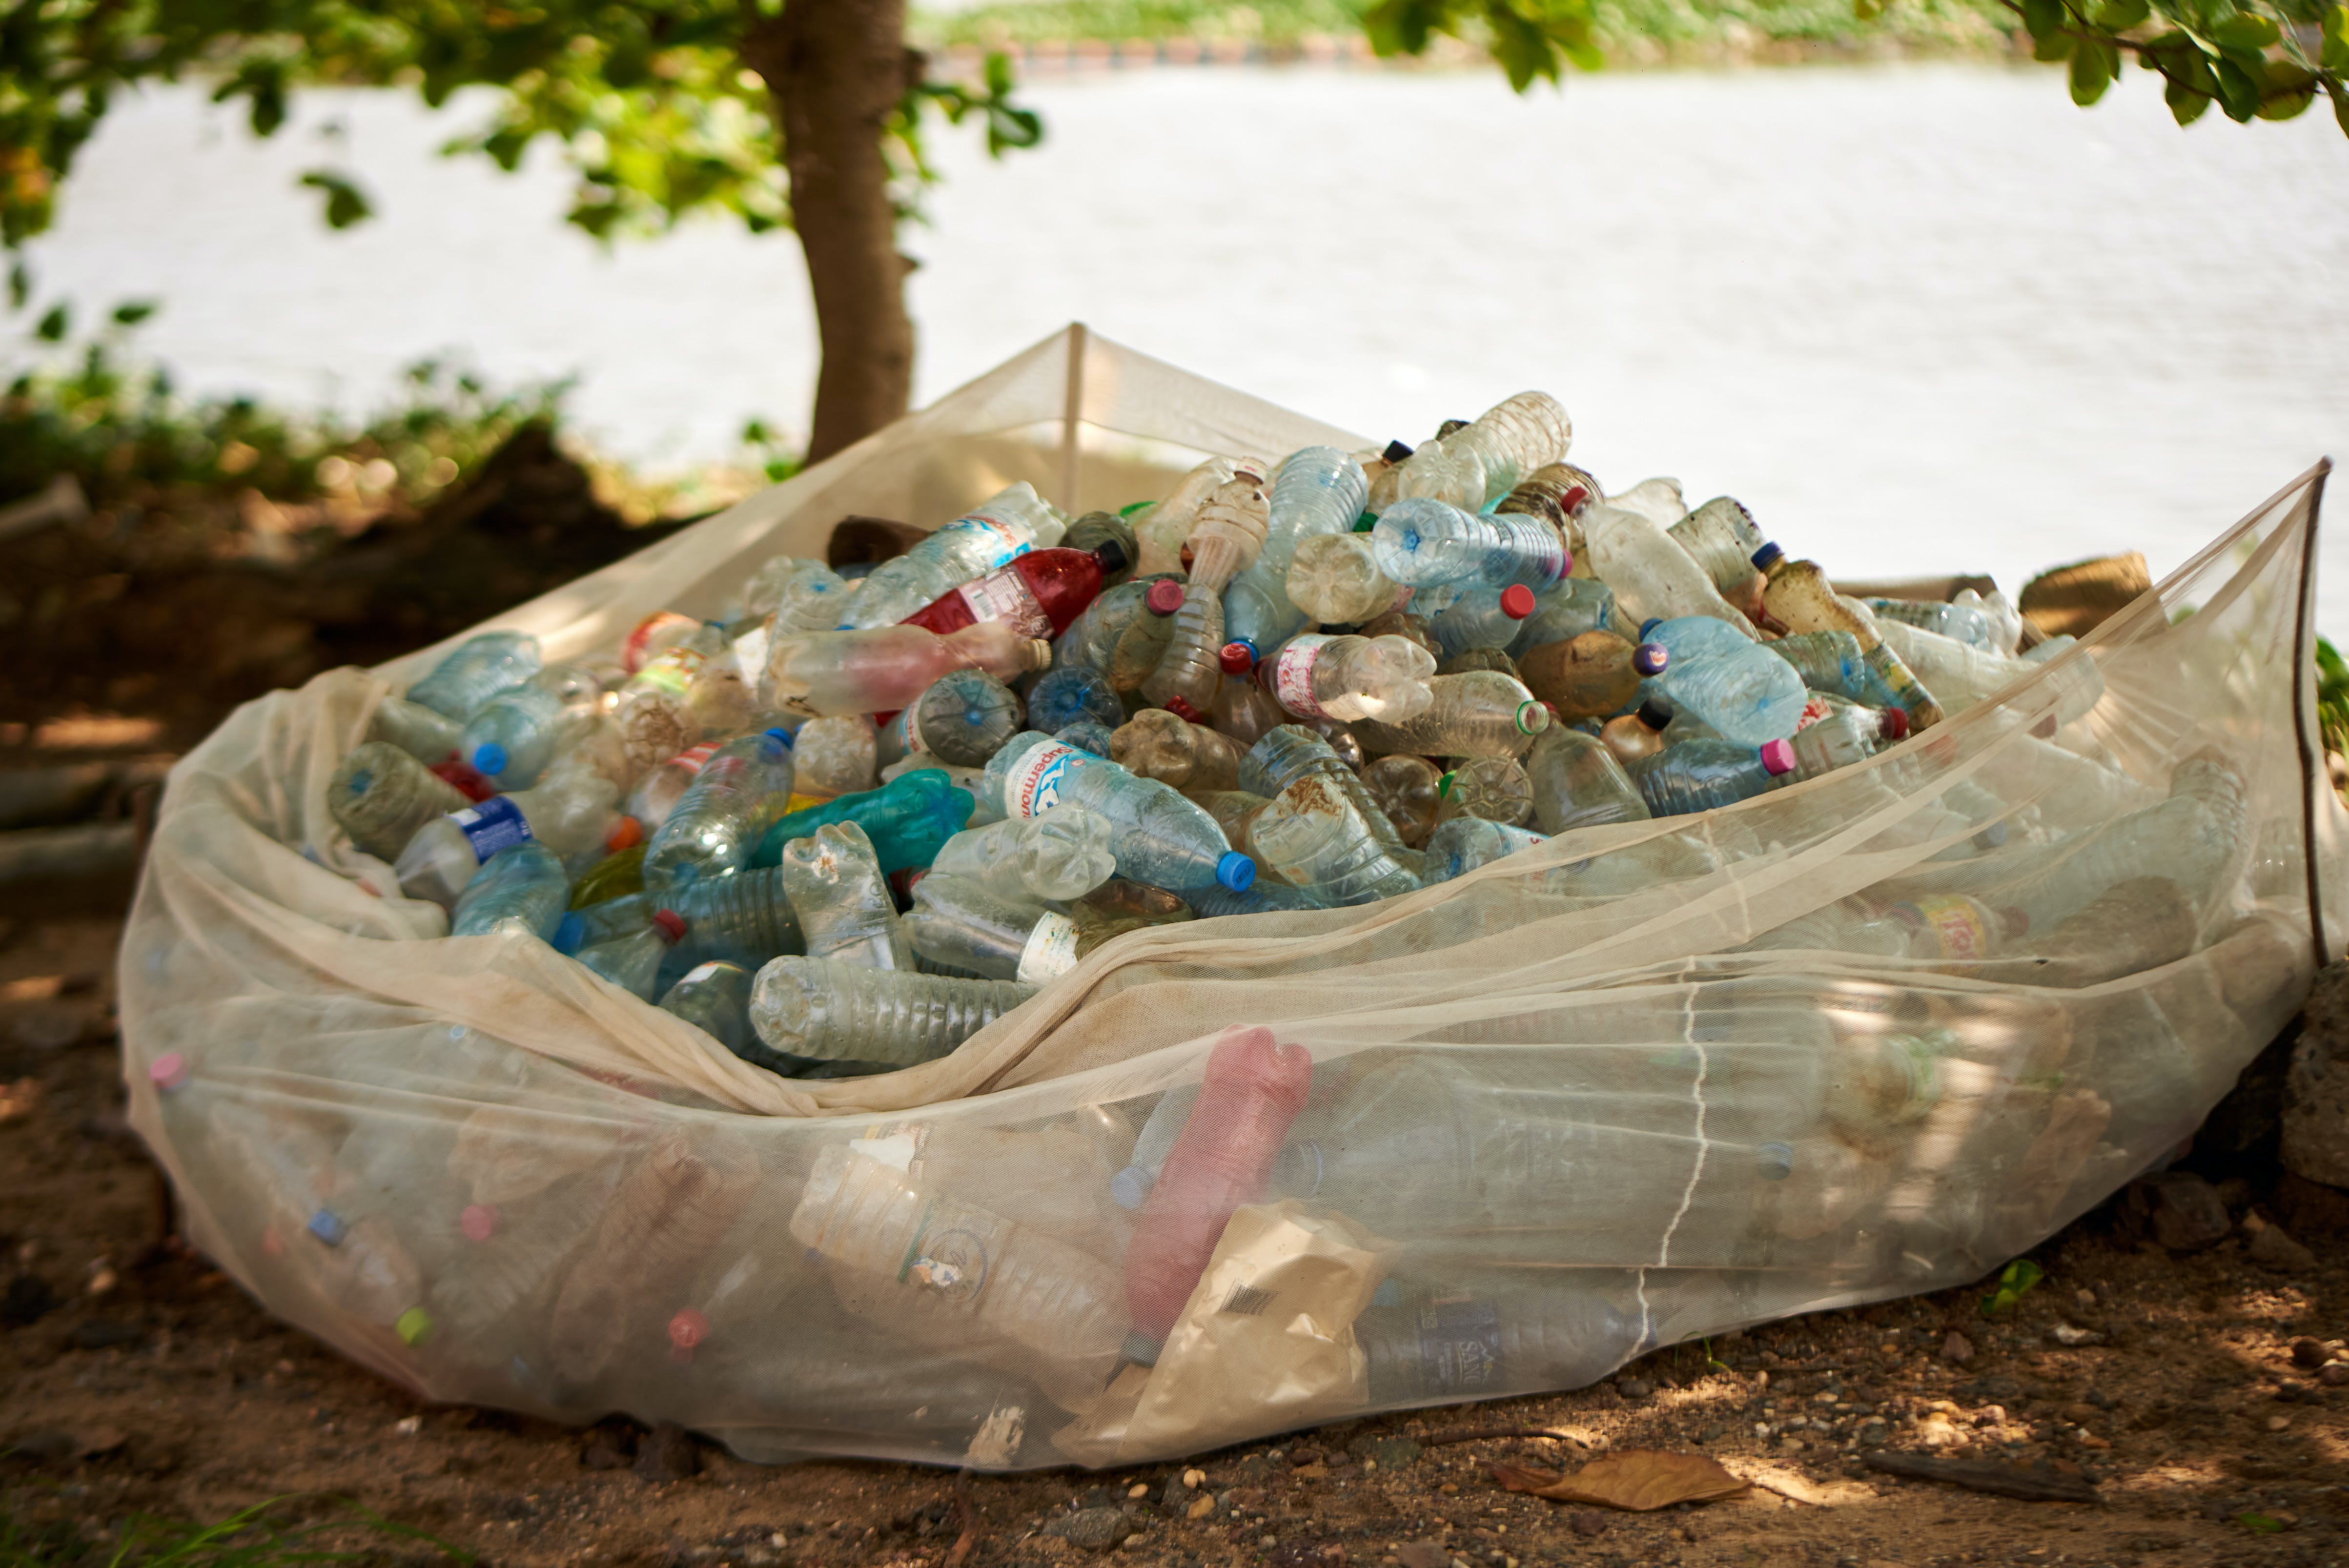 Gratis Fotos de stock gratuitas de basura, botellas de plástico, contaminación Foto de stock